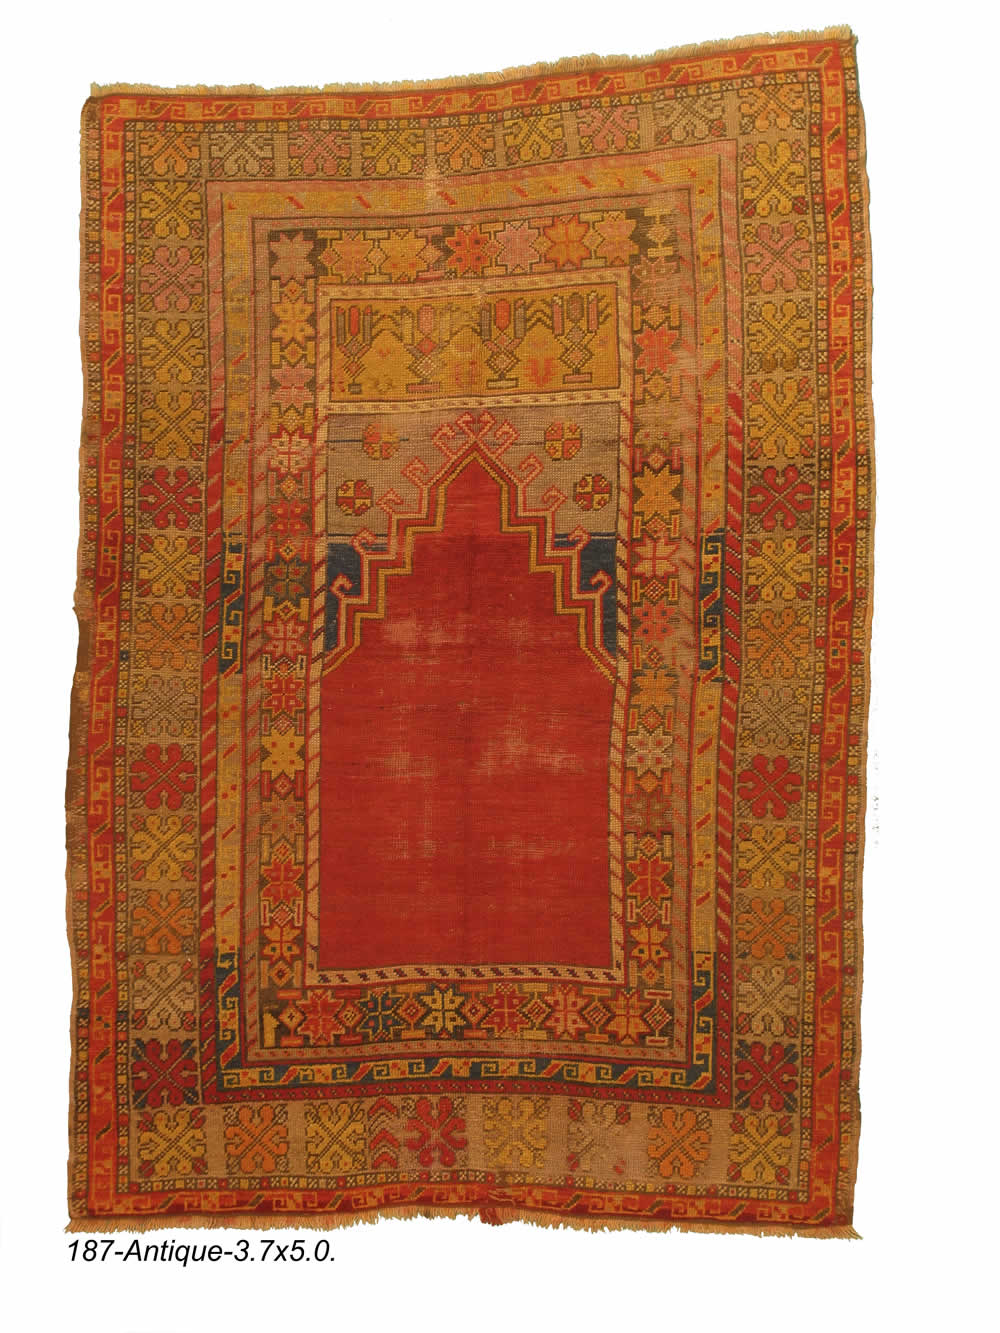 Antique Turkish Oushak Rug